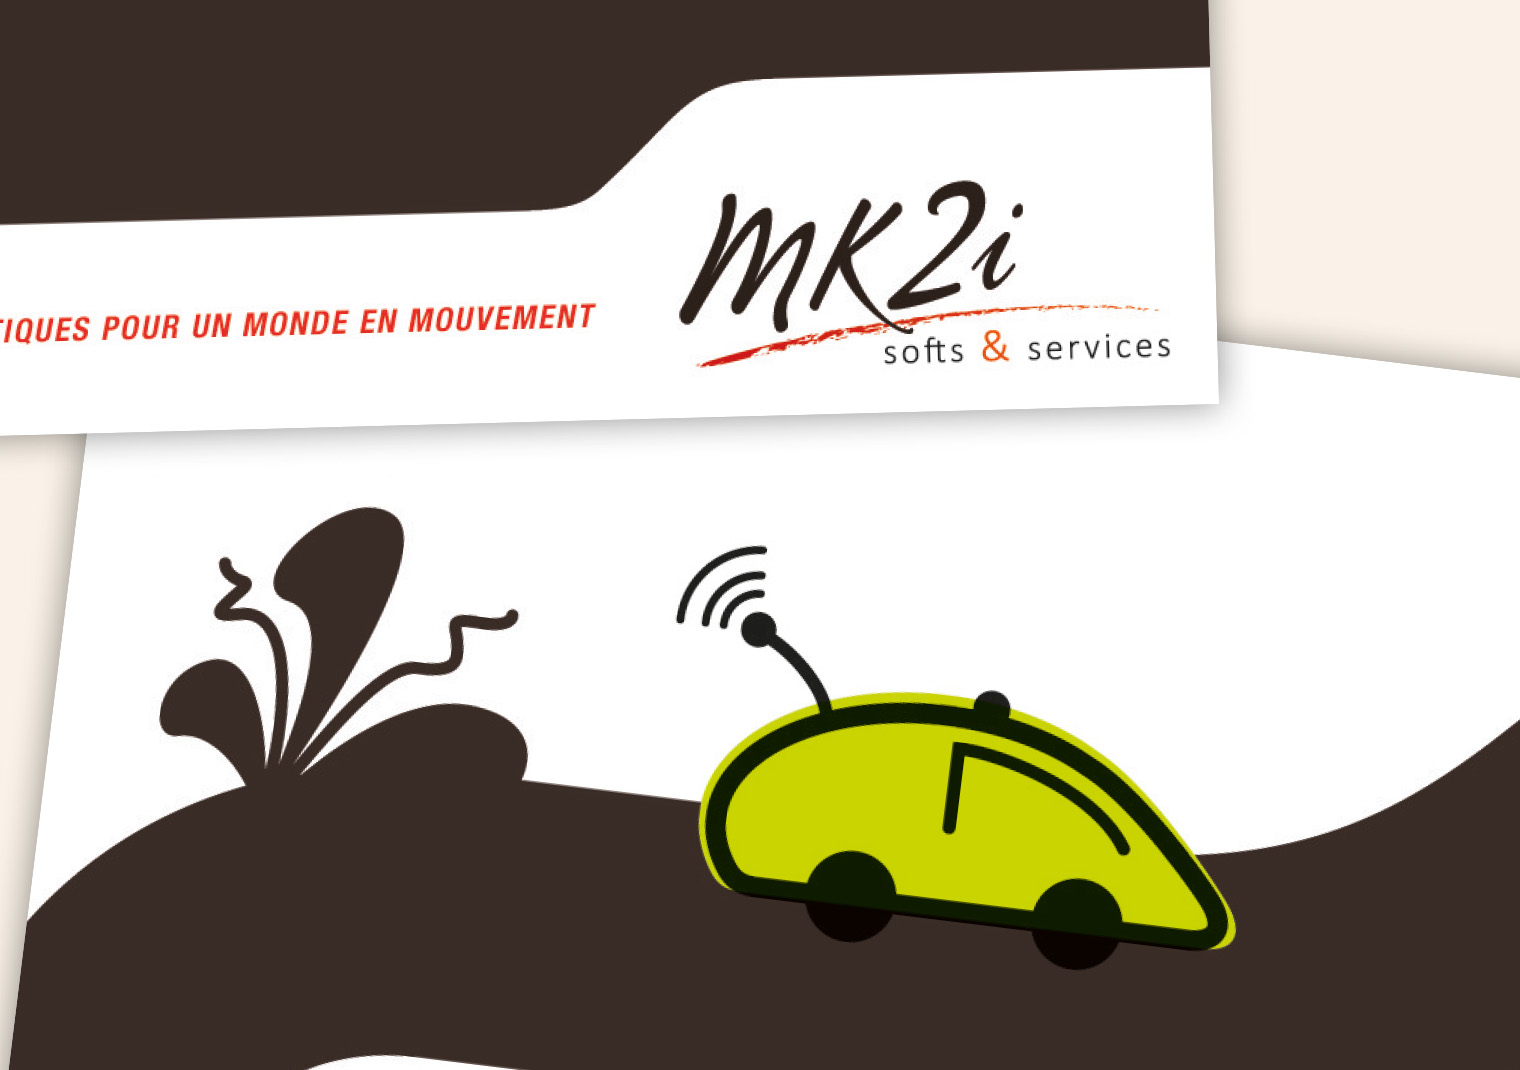 Nouveau logo créé pour MK2i par Caramel & Paprika - Vignette projet